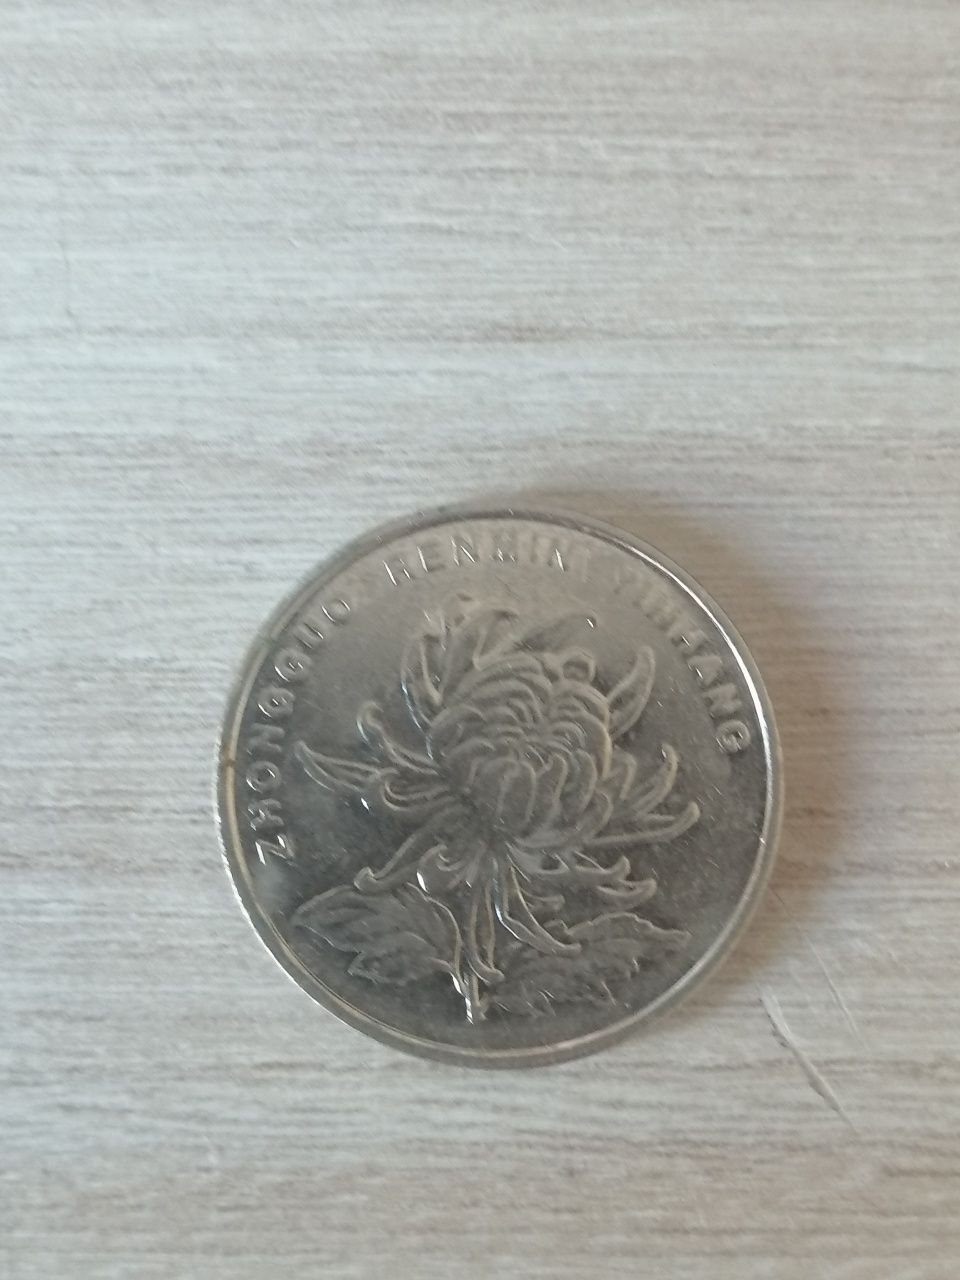 Stare monety polskie, Niemcy,Anglia Czechy, Słowenia, Chiny.